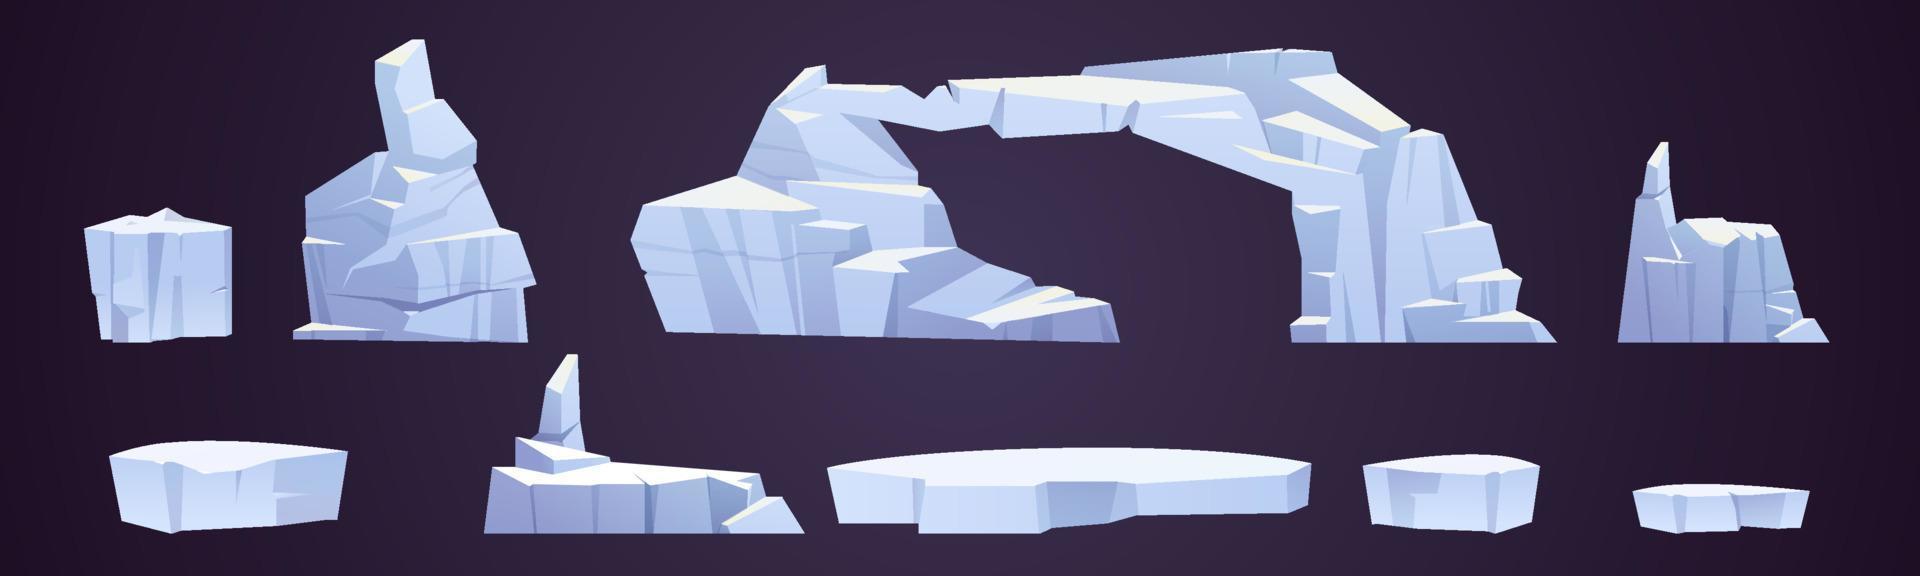 cartone animato ghiaccio banchi, congelato iceberg pezzi, ghiacciai vettore